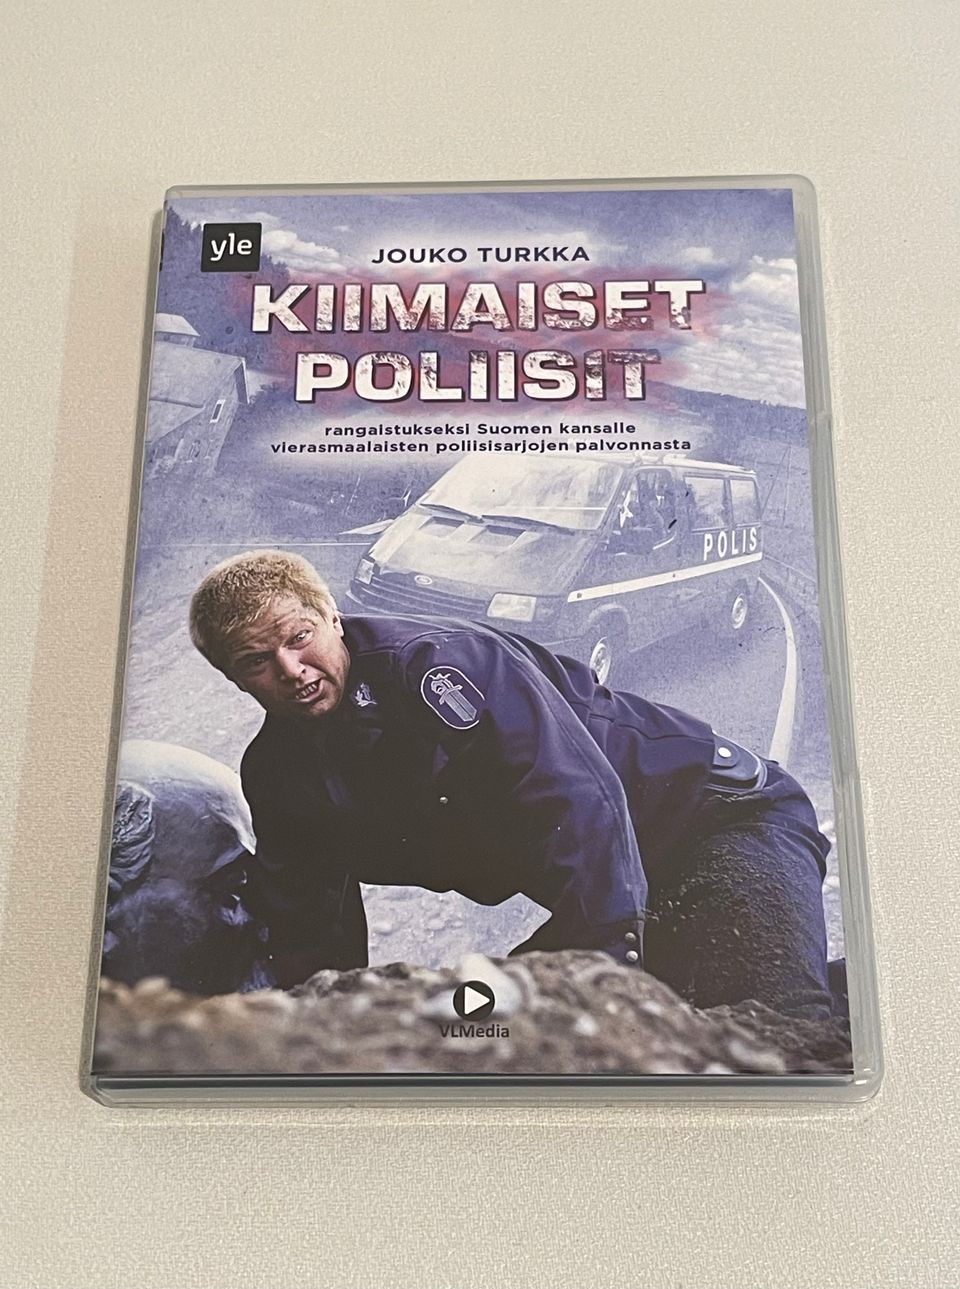 Kiimaiset poliisit (Jouko Turkka) DVD